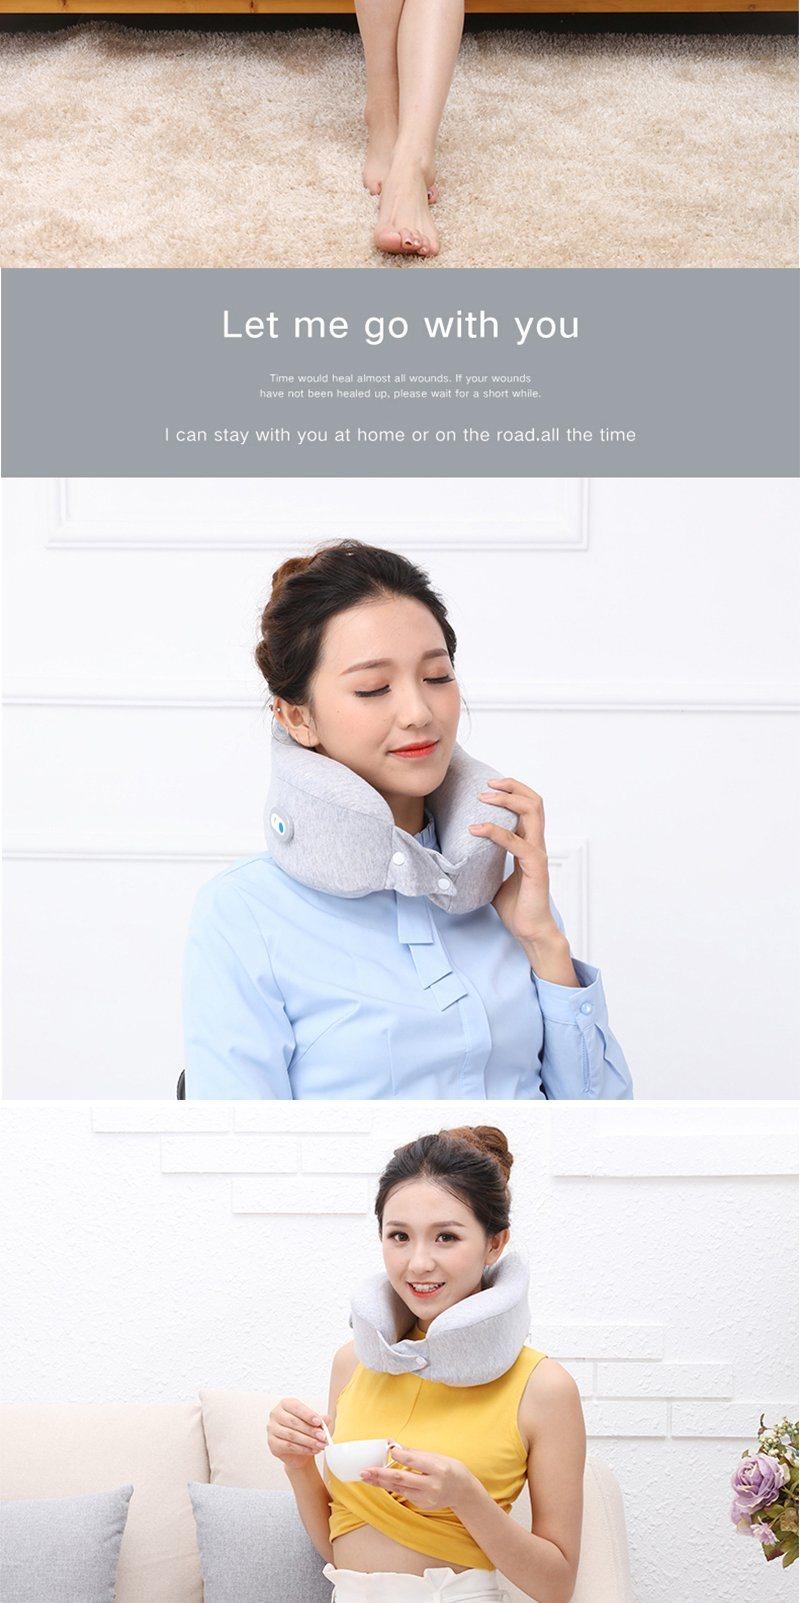 Hezheng Electric Battery Operated U Shape Memory Foam Vibration Massage Travel Neck Pillow Massager